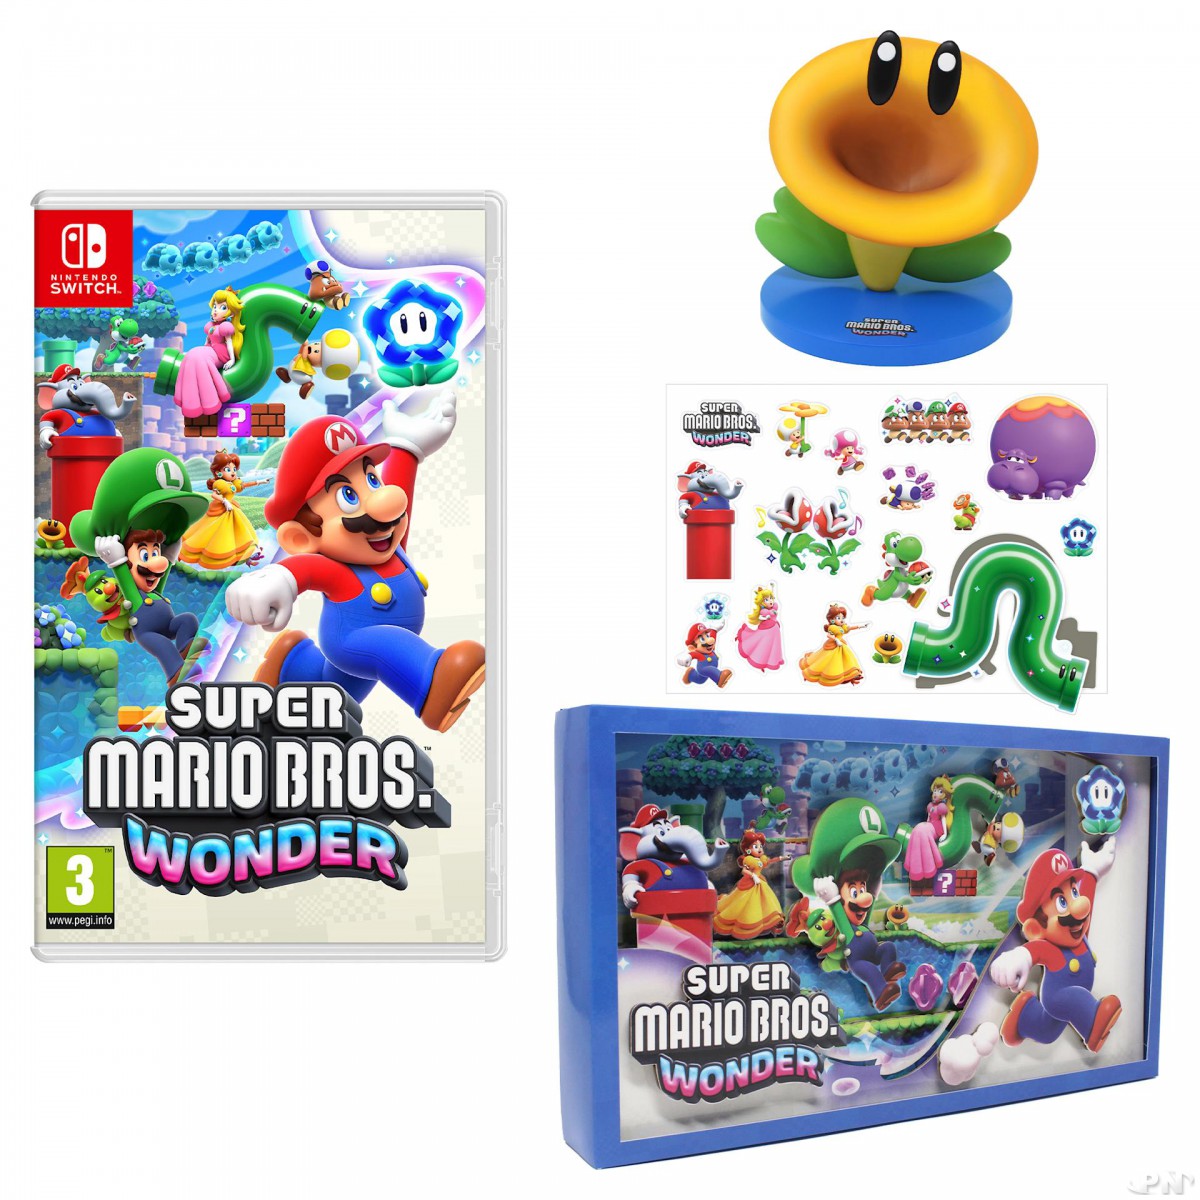 Super Mario Bros. Wonder en Nintendo Switch, avance. Preview con